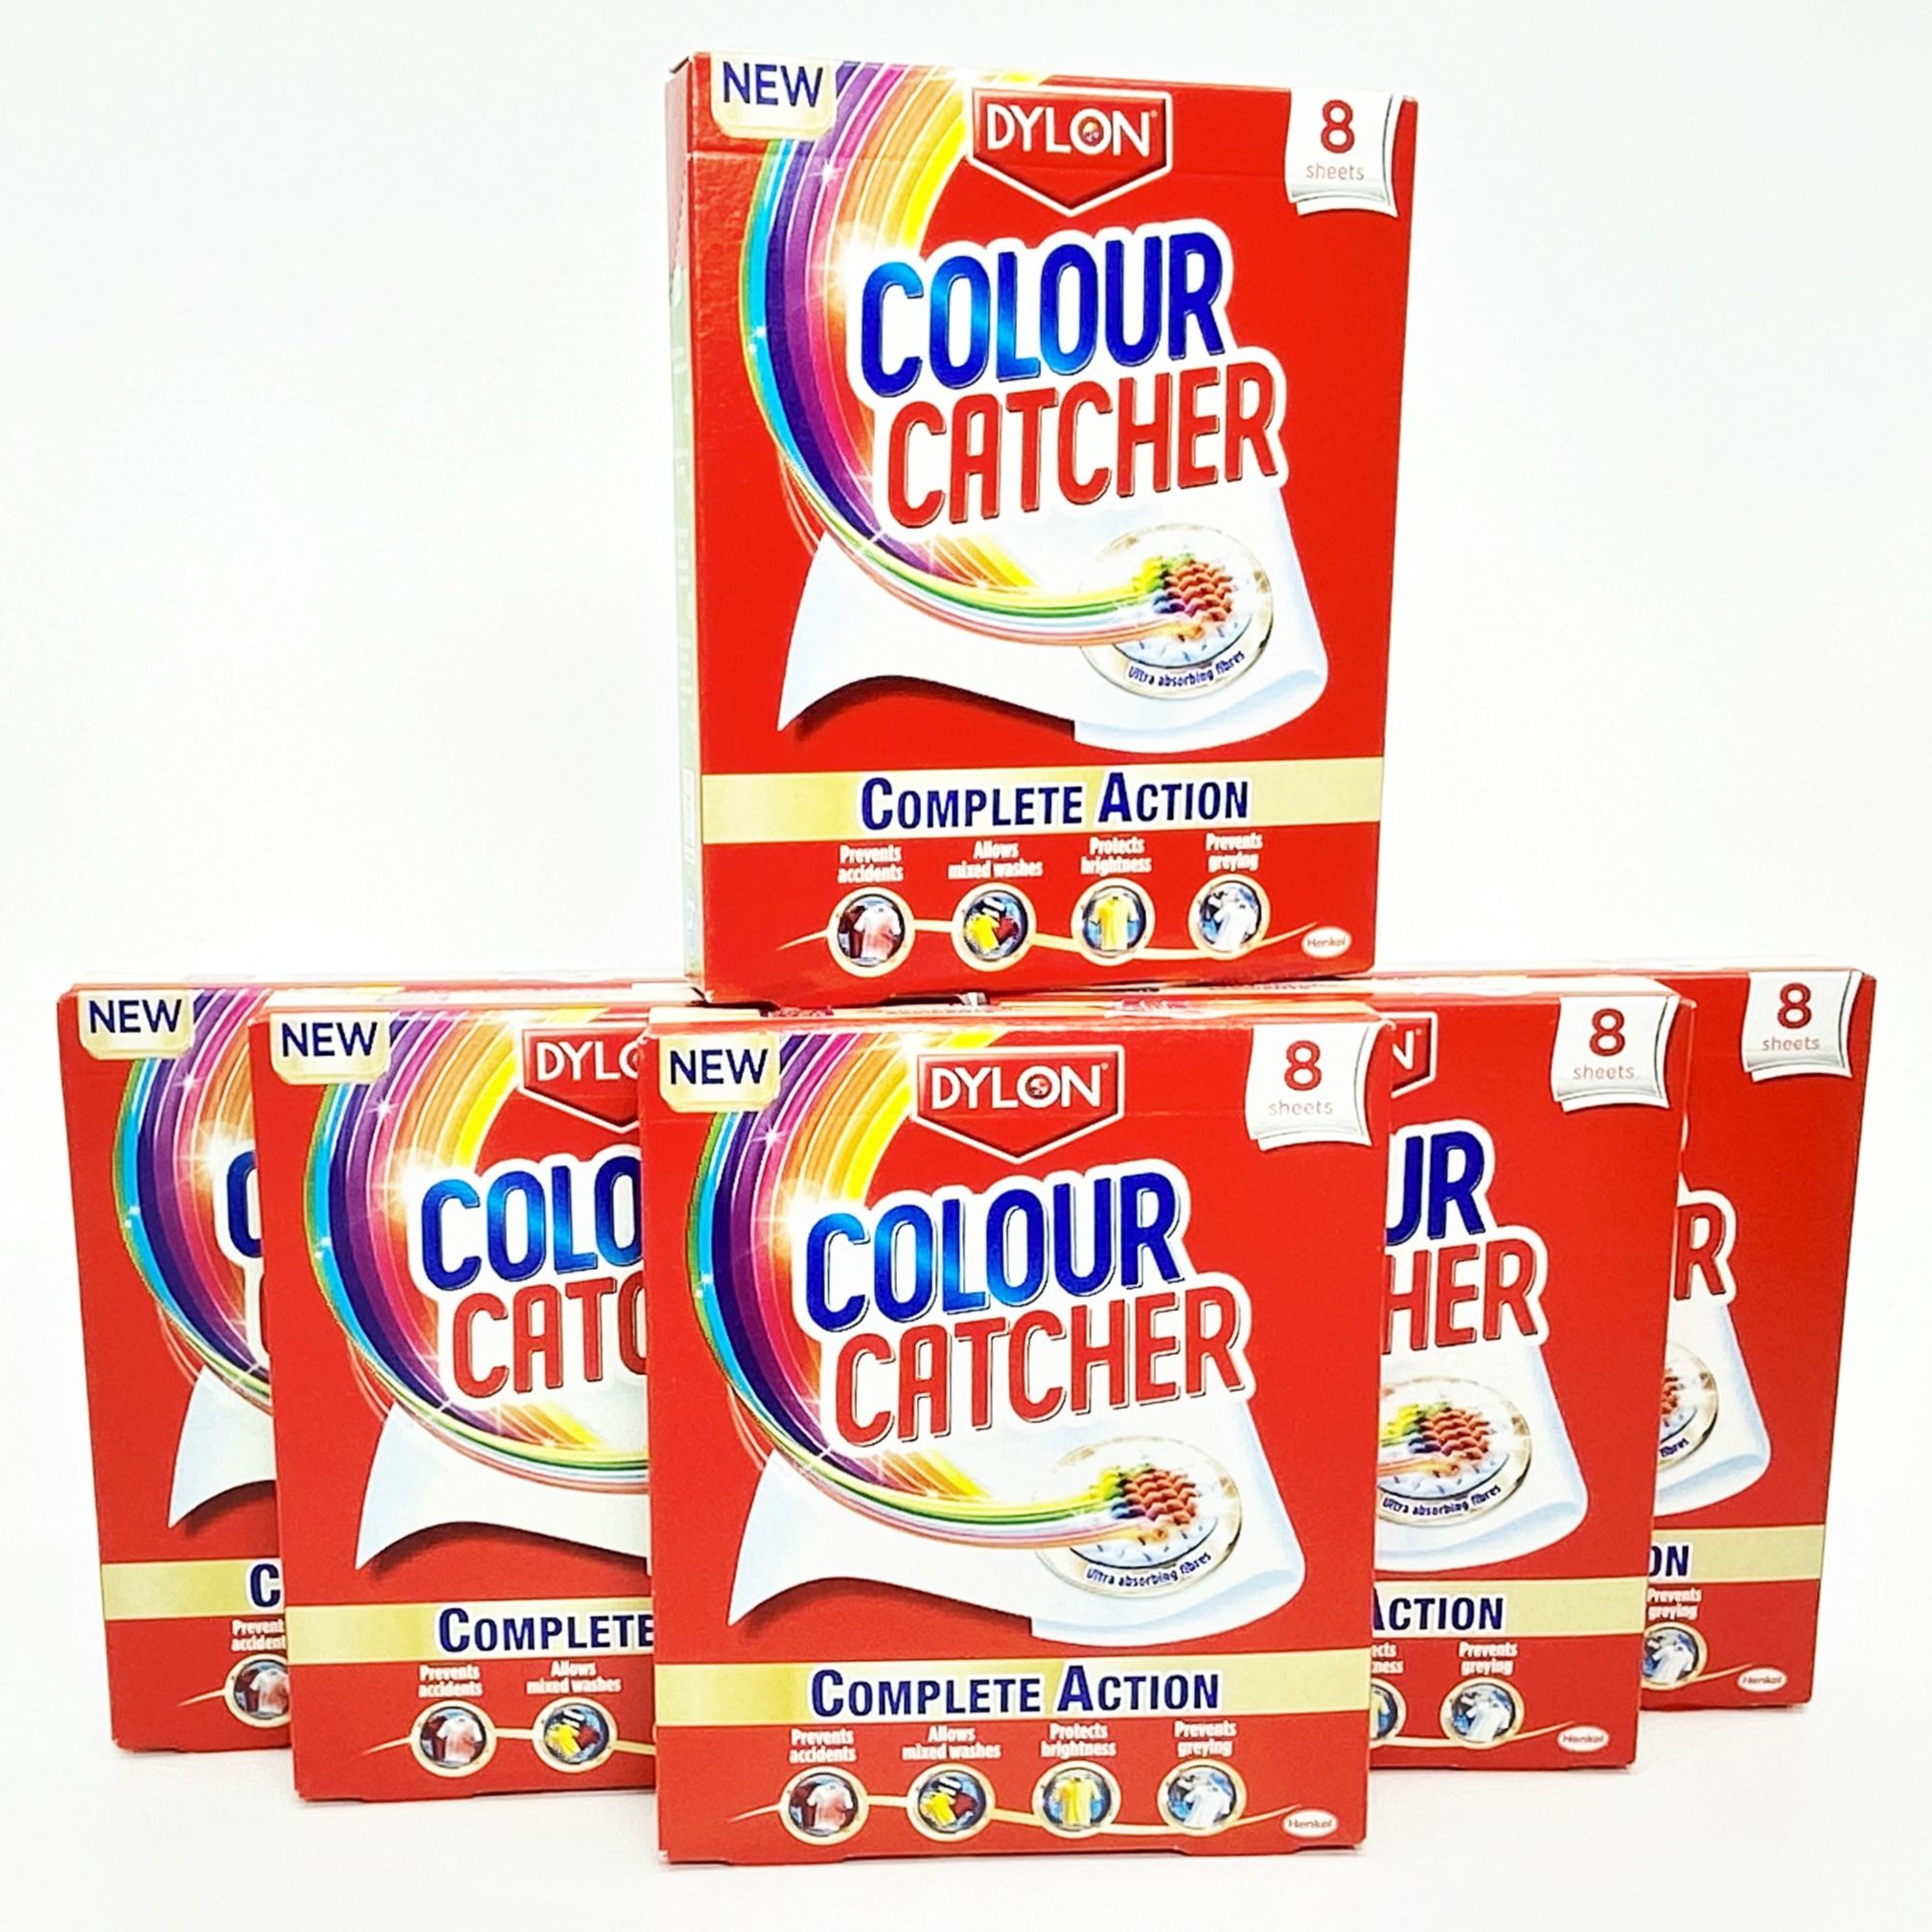 Colour Catcher Complete Action Laundry Sheets